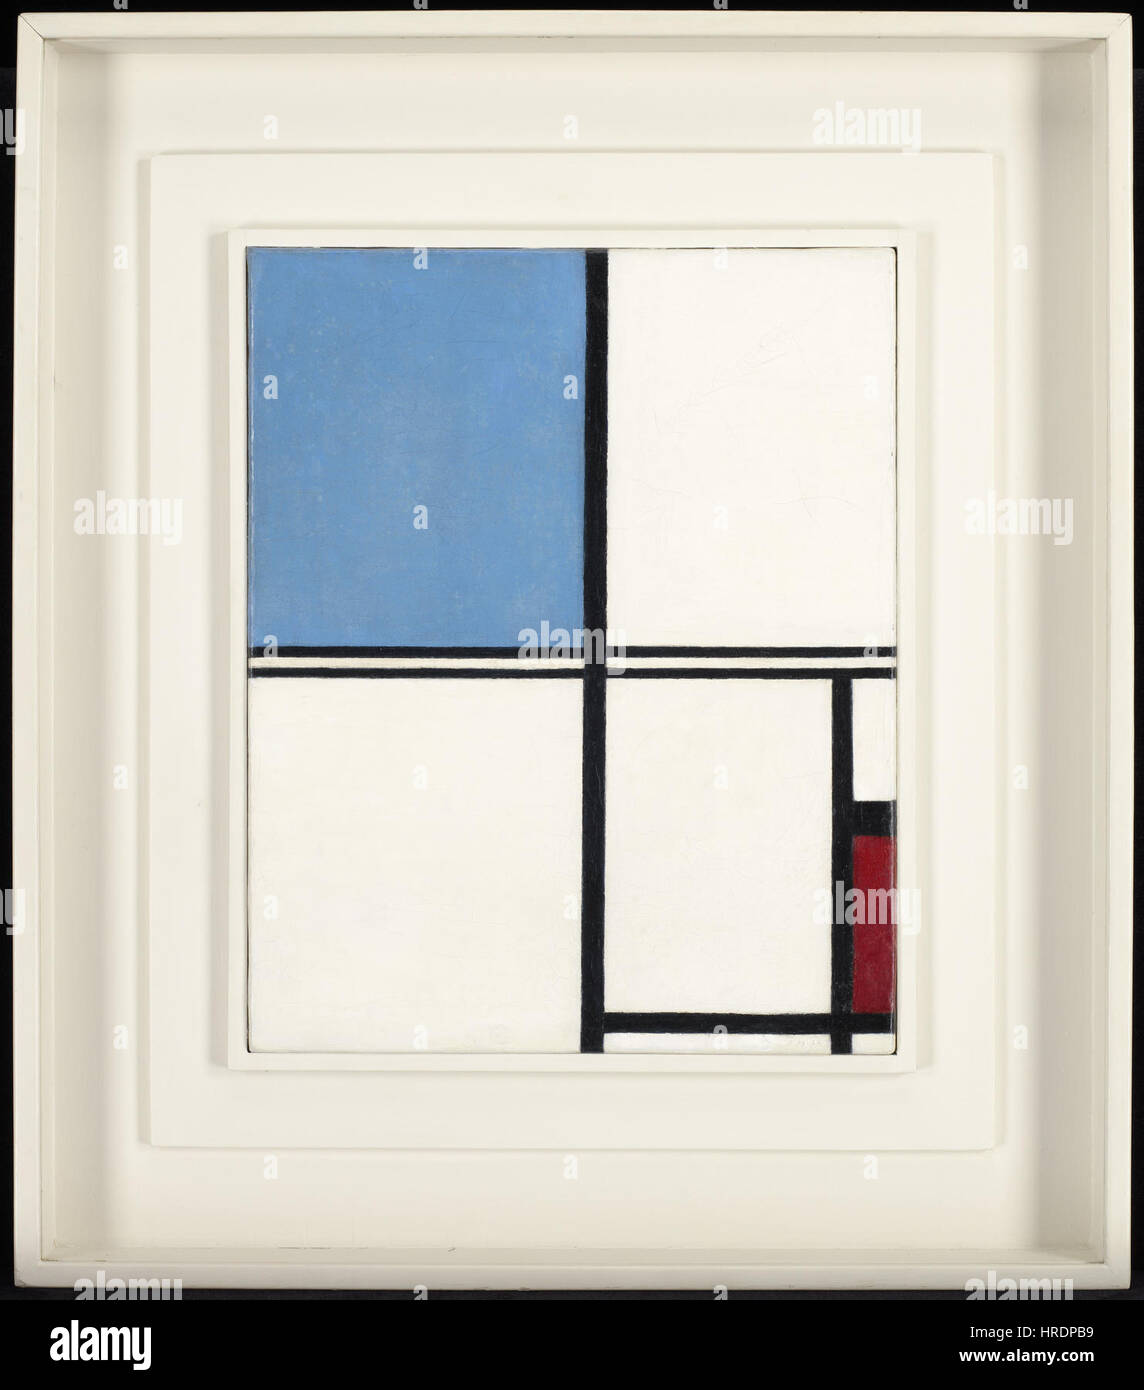 Piet Mondrian - Composition avec bleu et rouge - 75,83 - Minneapolis Institute of Arts Banque D'Images